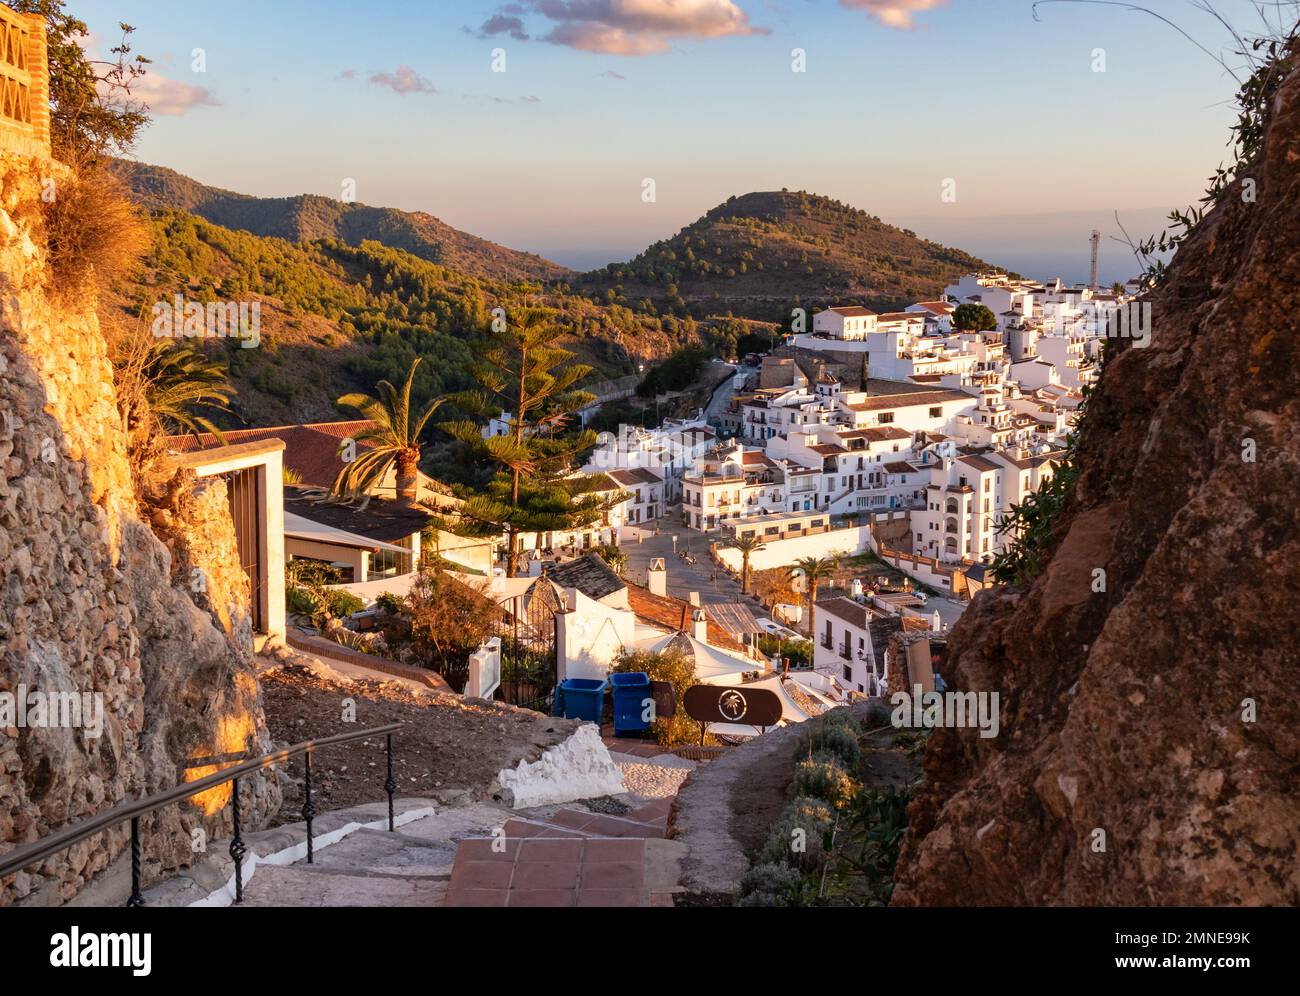 Panoramafoto von Frigiliana, Malaga, einer der schönsten Städte Spaniens. Mit seinen weißen Mauern, den engen Gassen und vielen Treppen. Stockfoto